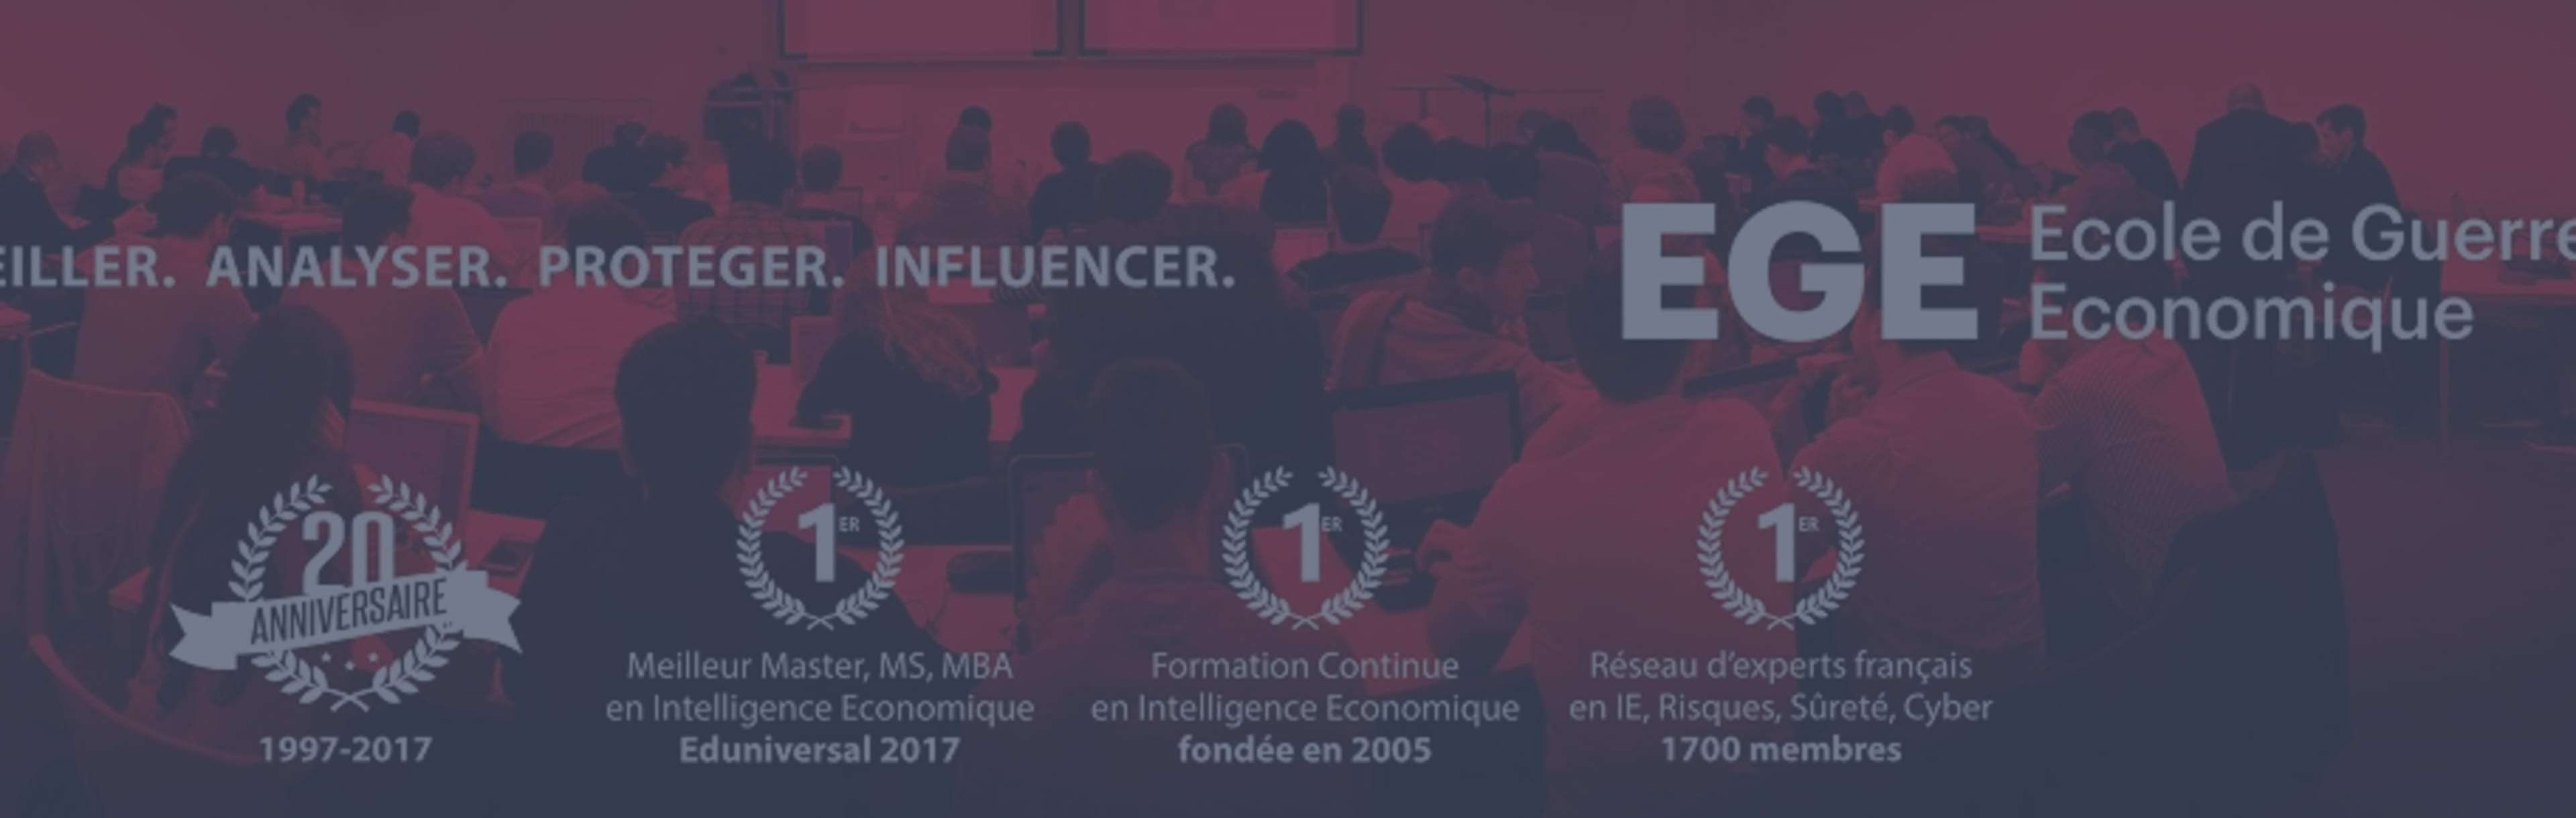 L'Ecole de Guerre Economique MBA спеціалізованої стратегії та економічної розвідки